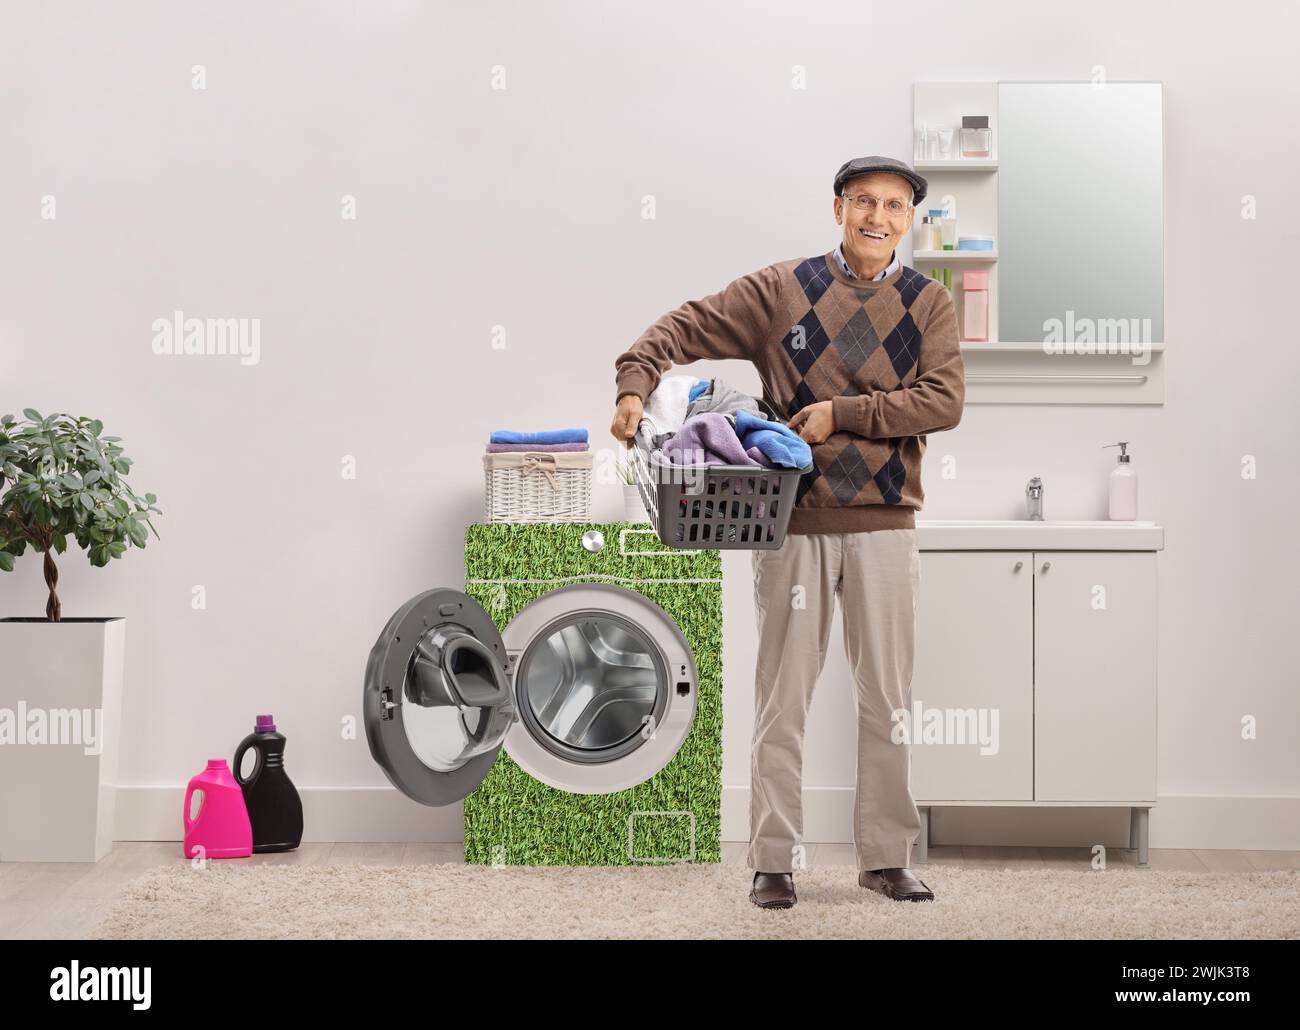 Uomo anziano sorridente che tiene in mano un cesto per lavanderia pieno di vestiti all'interno di un bagno con una lavatrice ad alta efficienza energetica Foto Stock